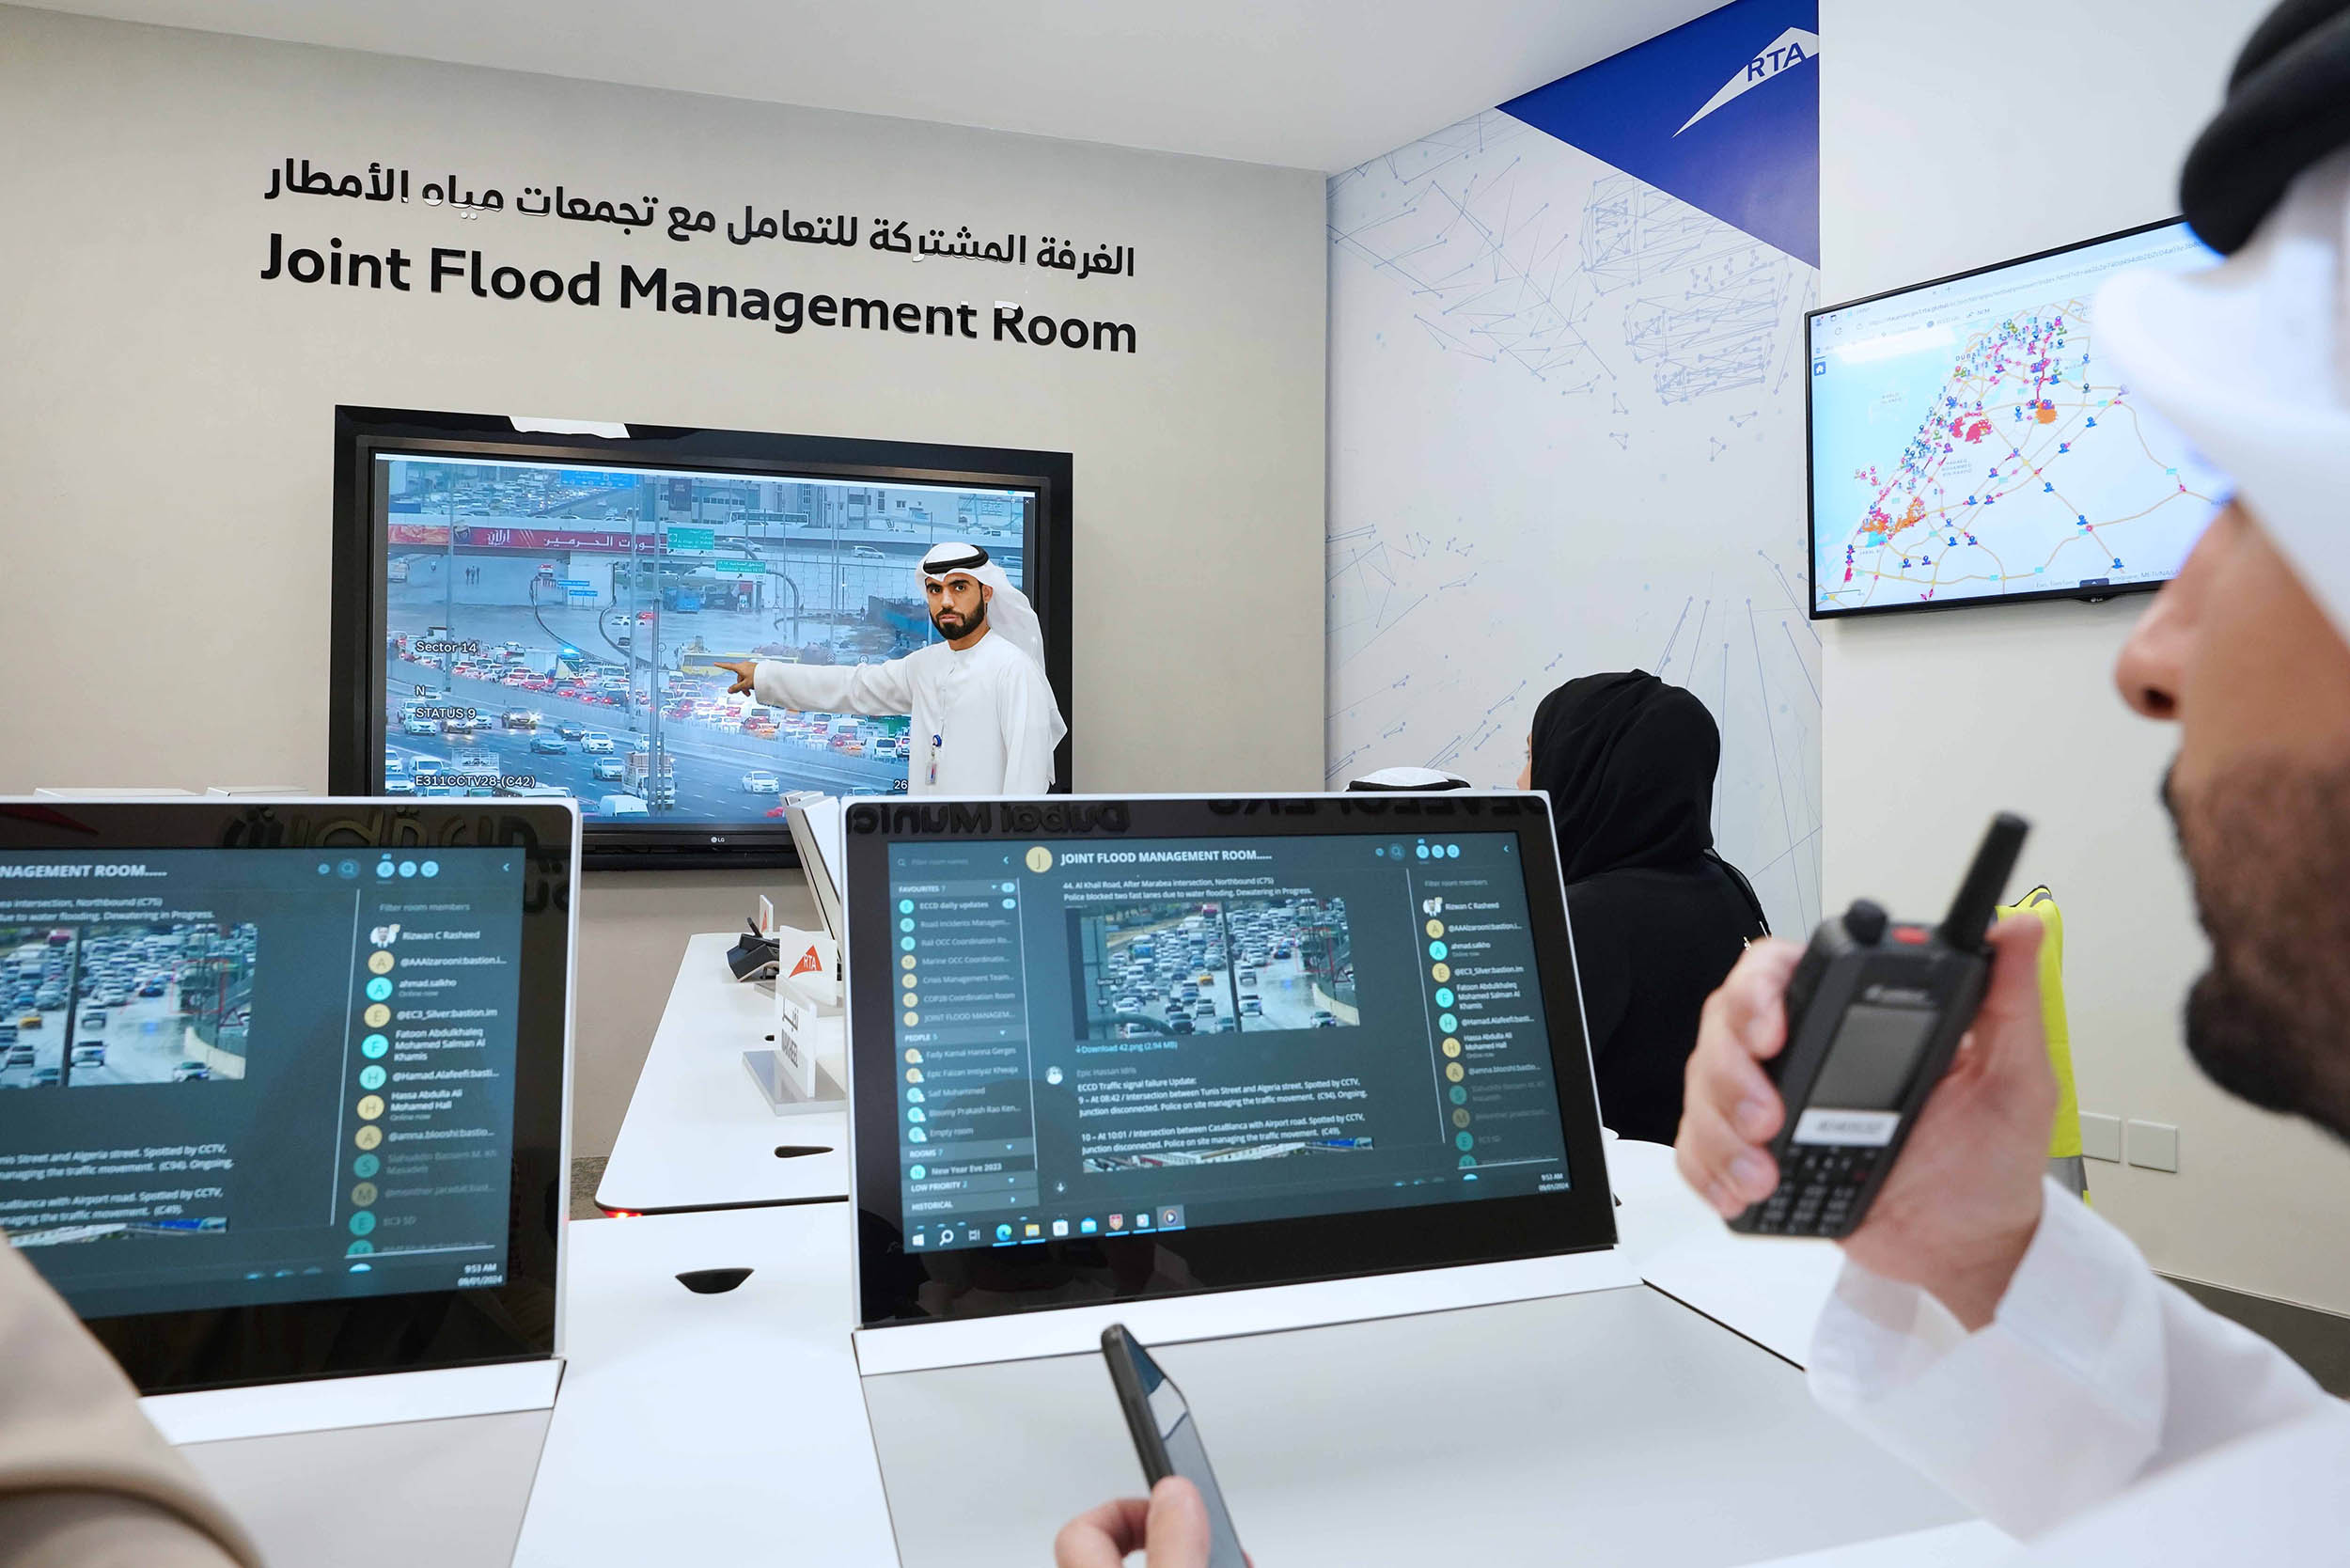 «طرق دبي» تدشن الغرفة المشتركة للتعامل مع تجمعات مياه الأمطار